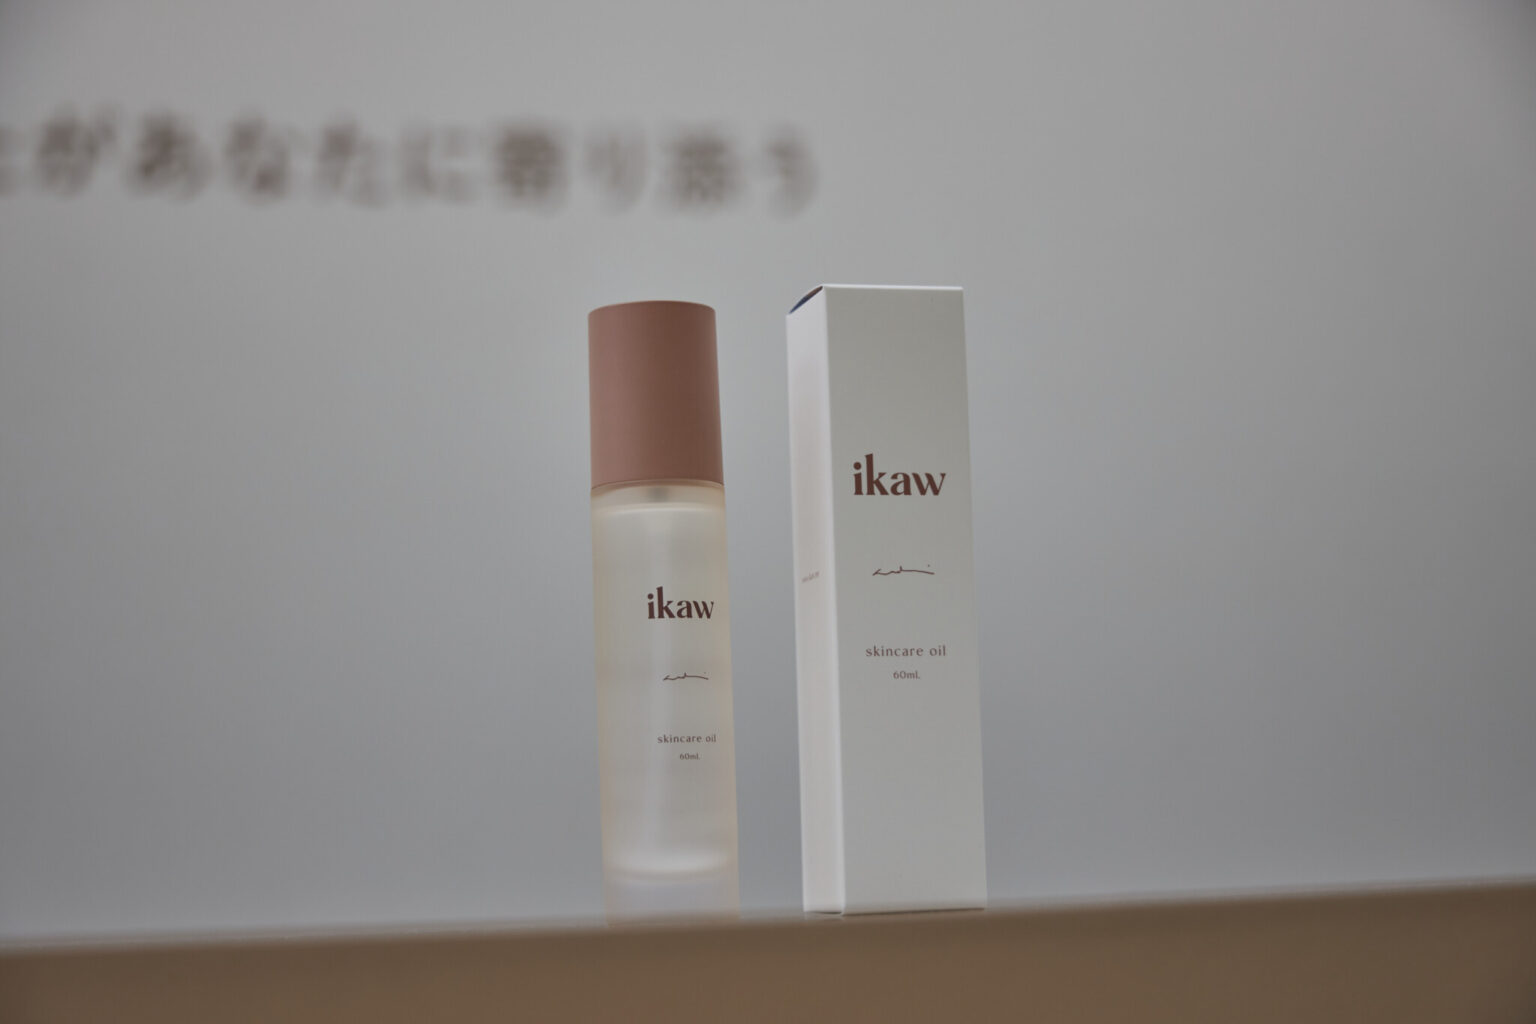 「ikaw skincare oil」60ml 6,270円。髪からデリケートゾーンまで全身に使えるオイル。